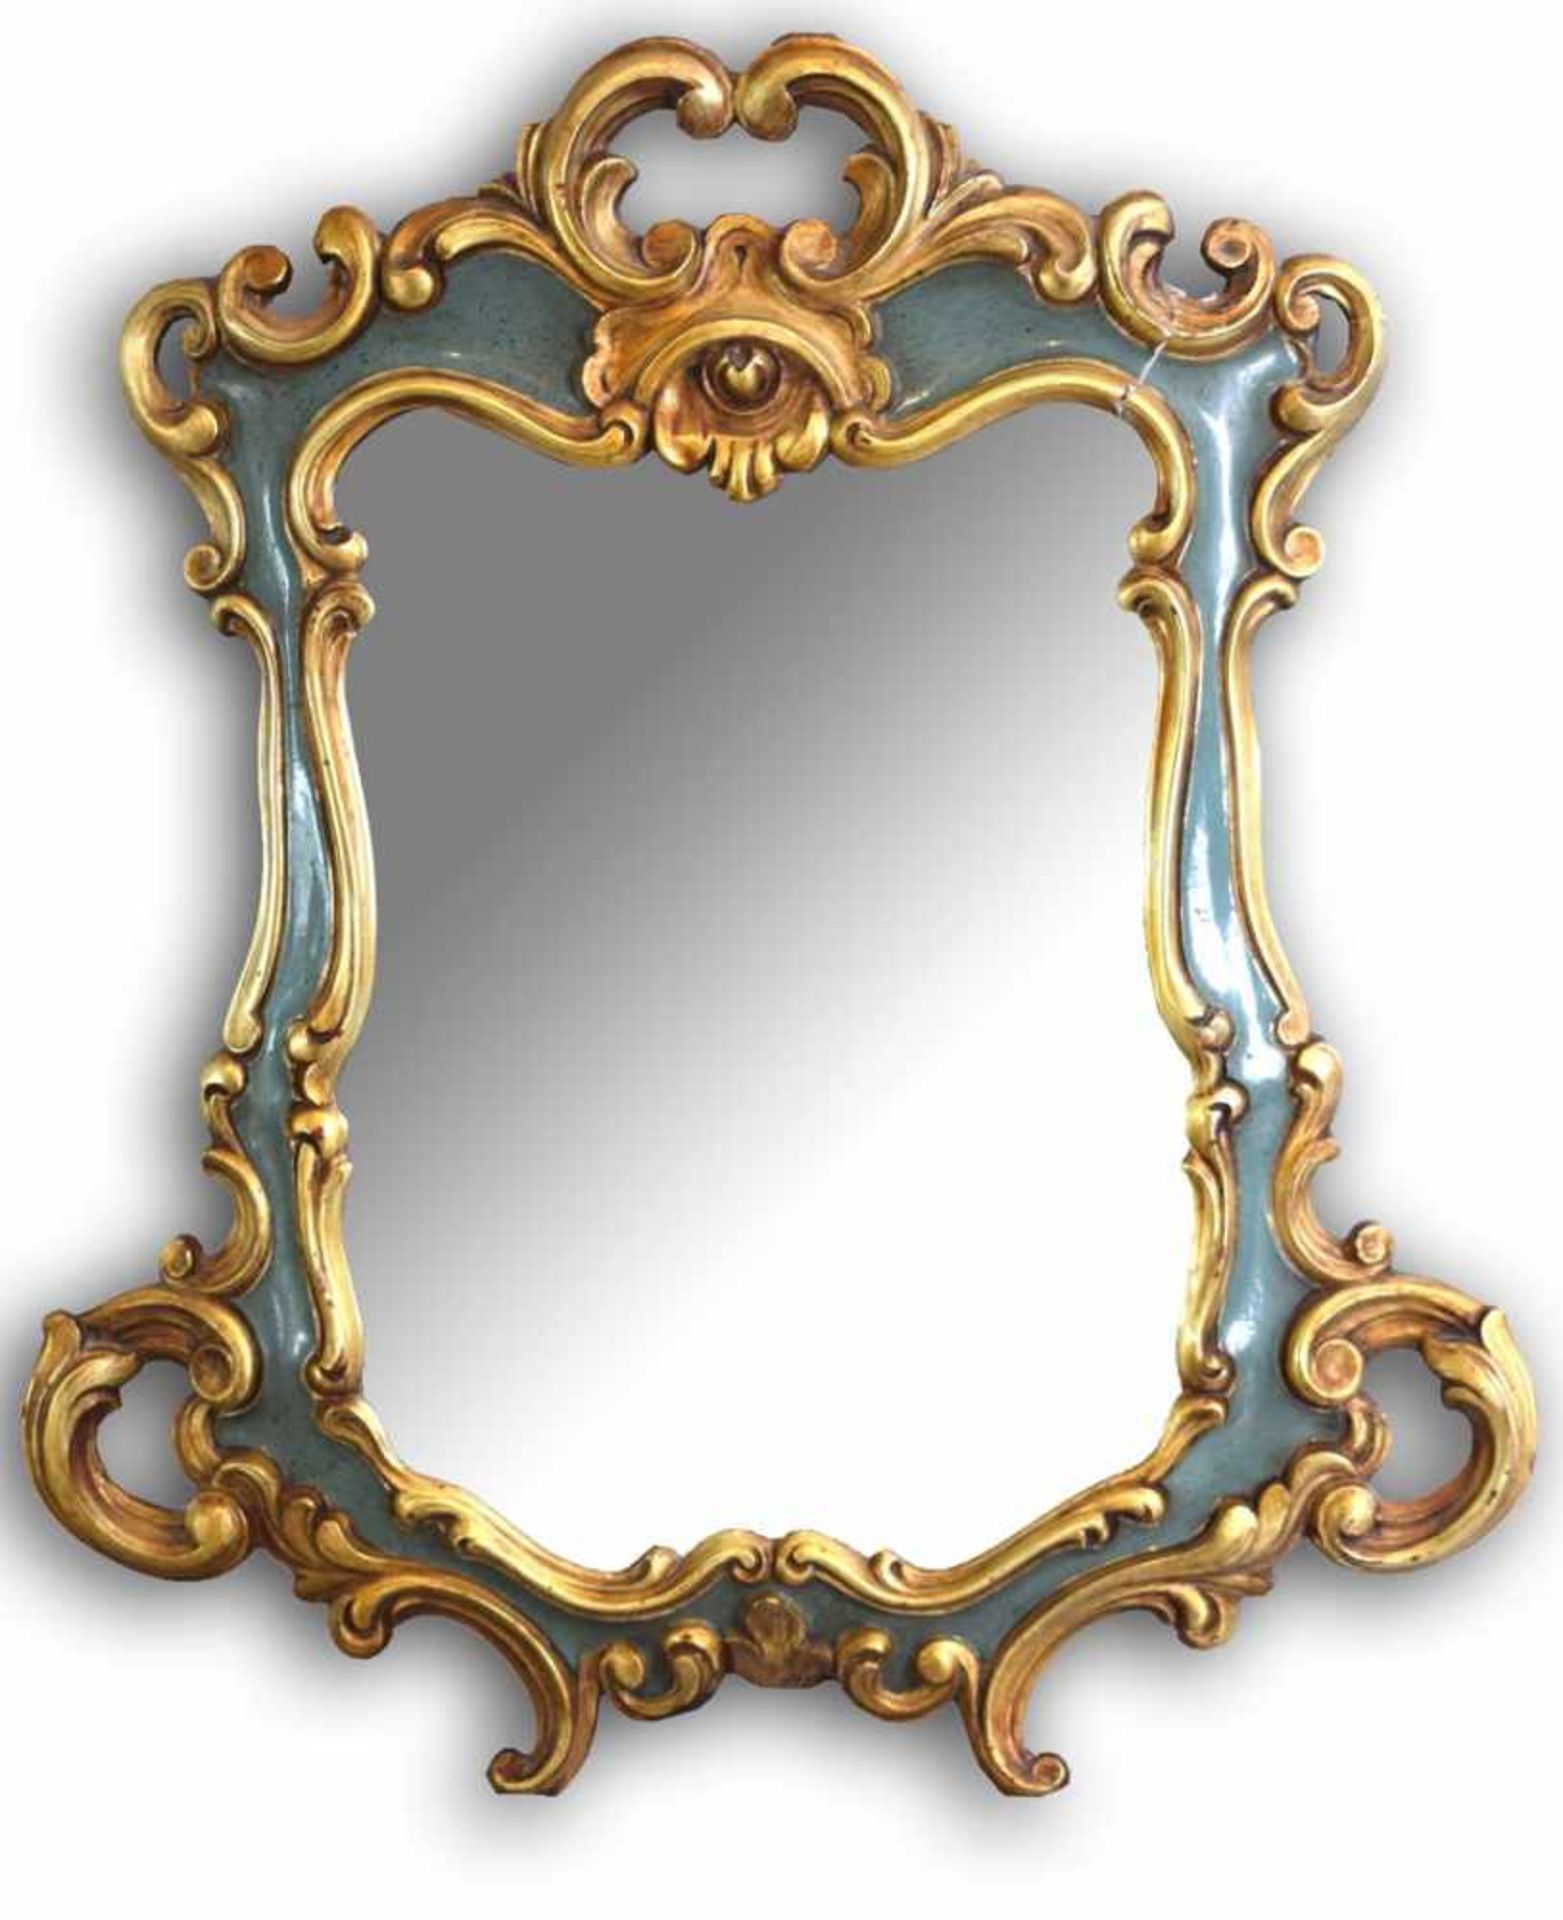 Spiegel im Rokoko-Stil, gold/grün gefasst, facettiert geschliffen, 46 X 51 cm